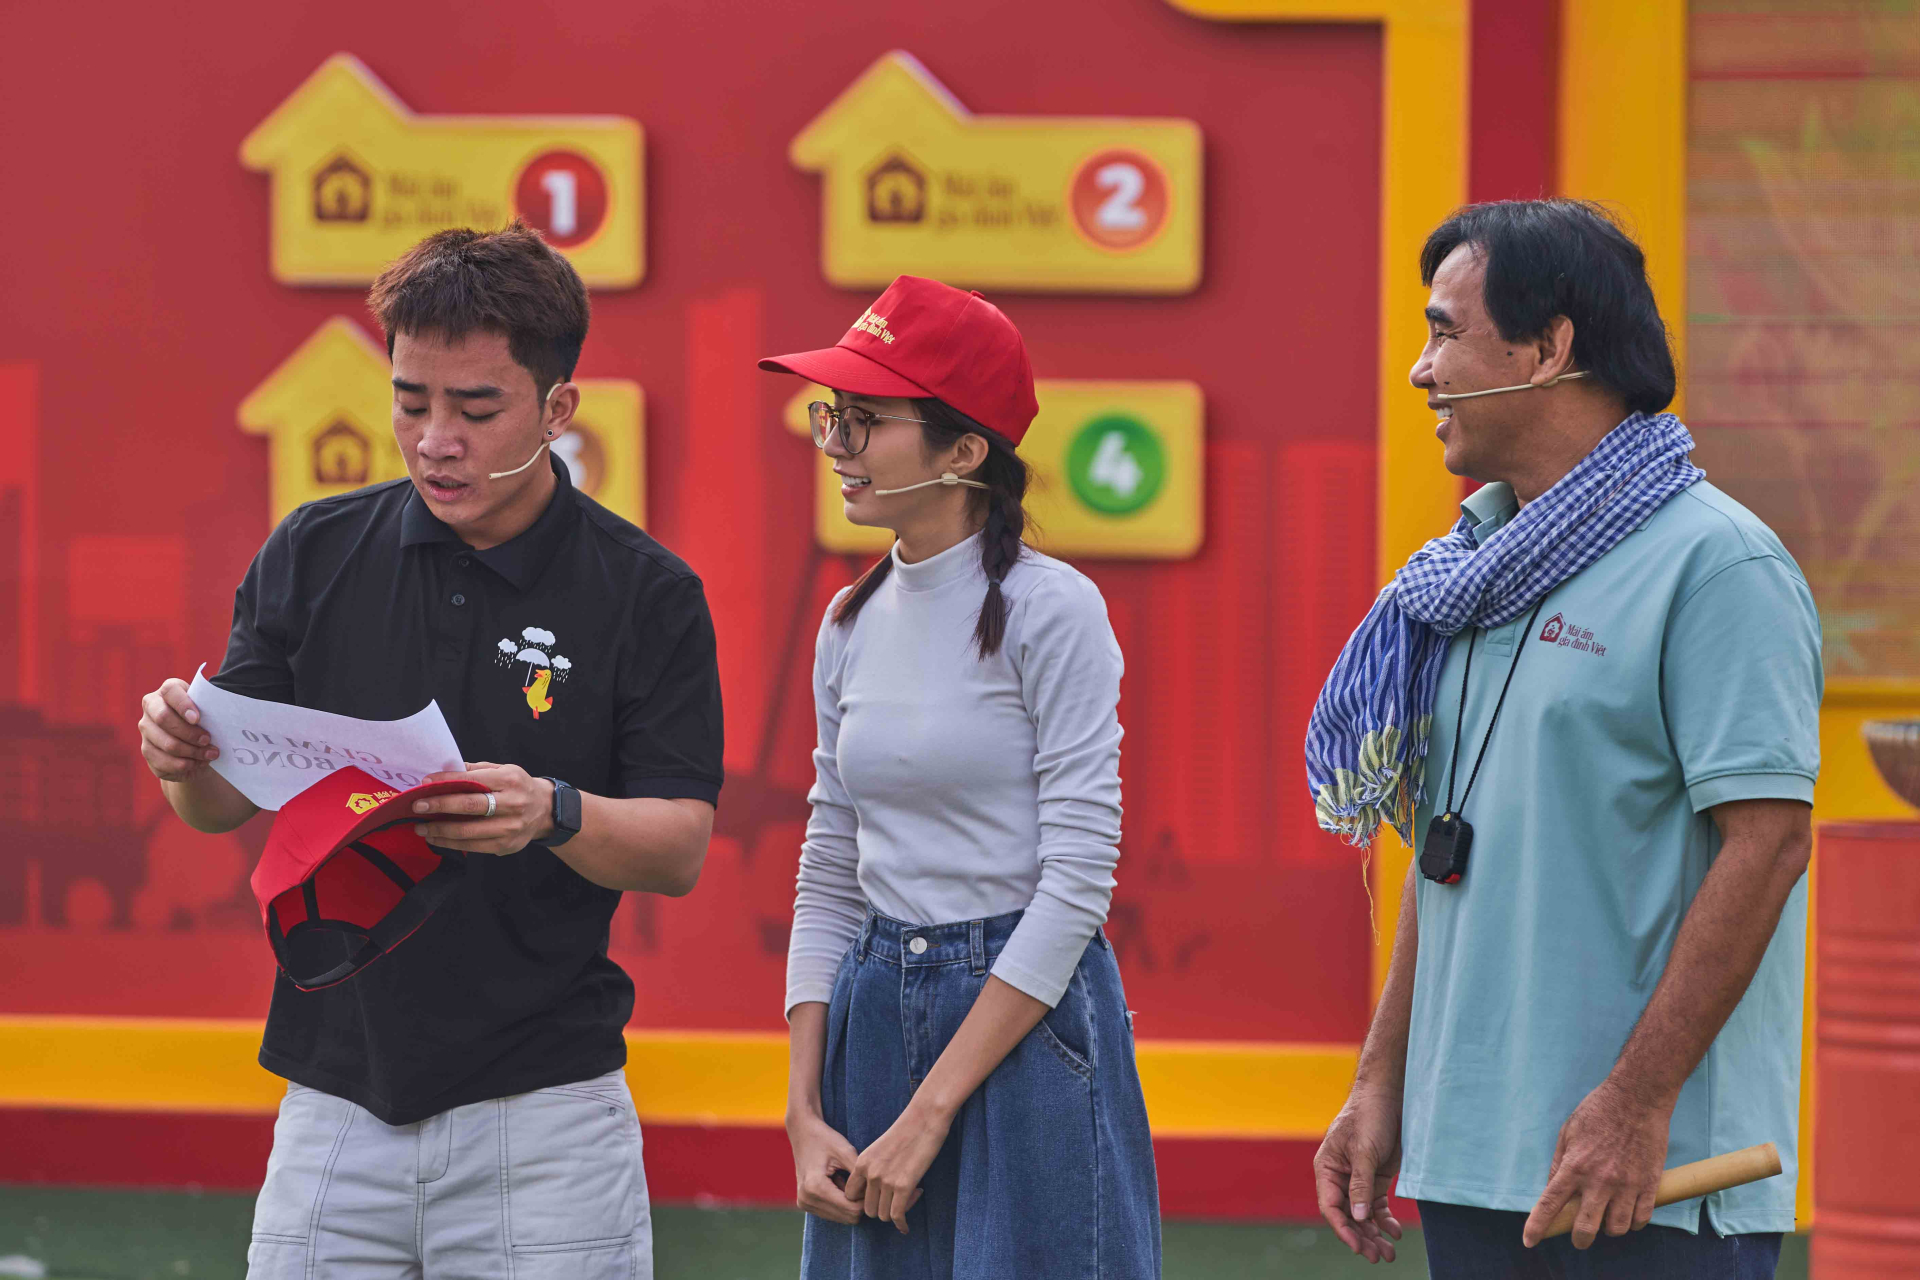 Diễn viên Đỗ Duy Nam và diễn viên Ngọc Huyền góp sức mang về giải thưởng 105 triệu cho trẻ em mồ côi - ảnh 4